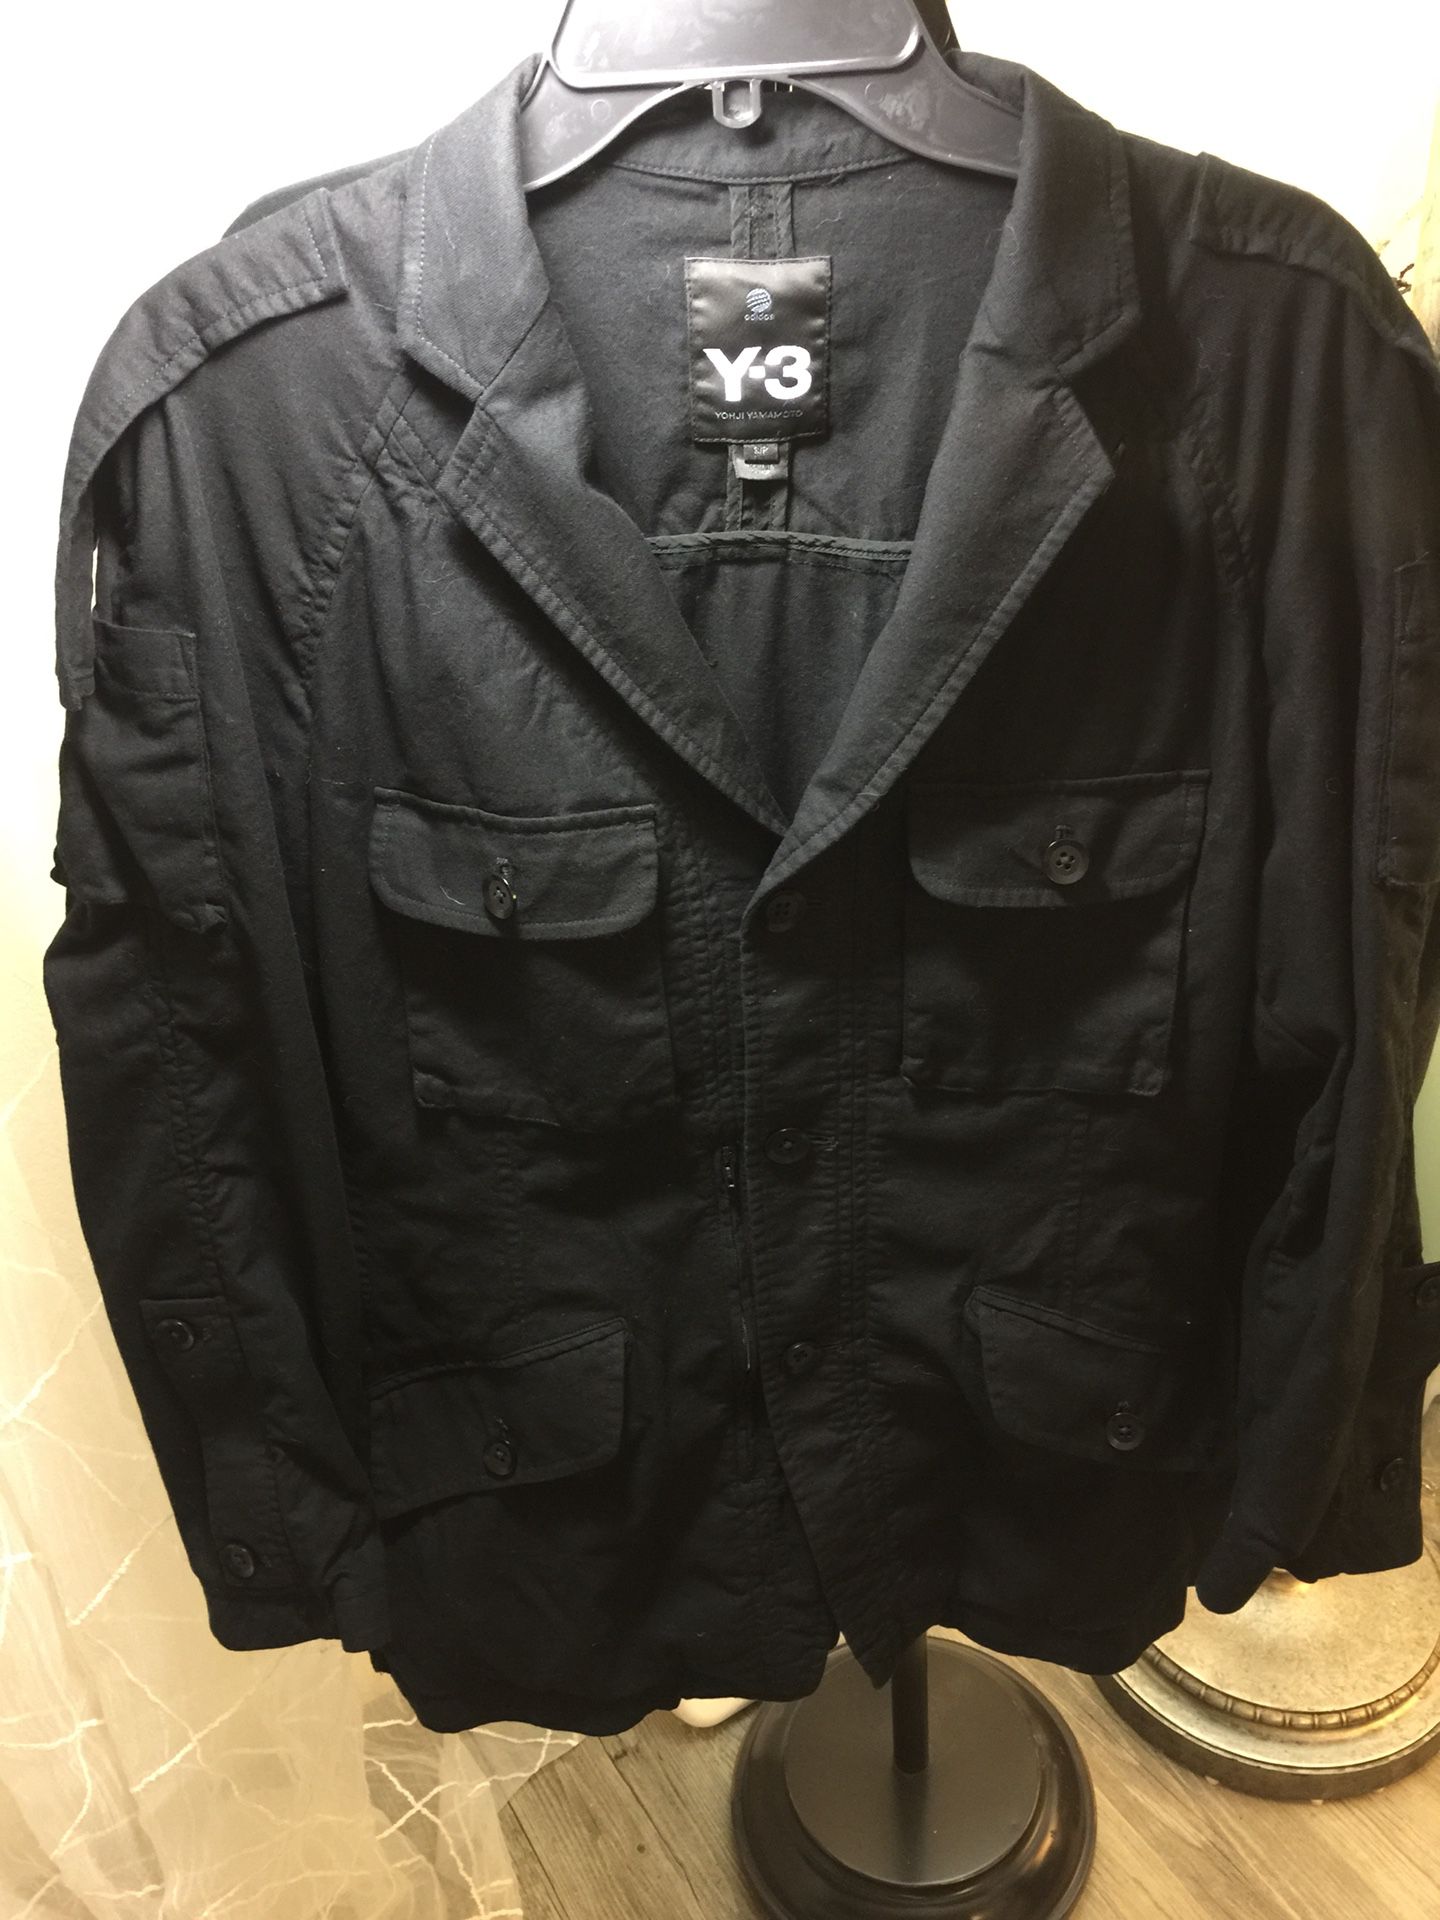 Y-3 Yohji Yamamoto Adidas top and jacket size s/p